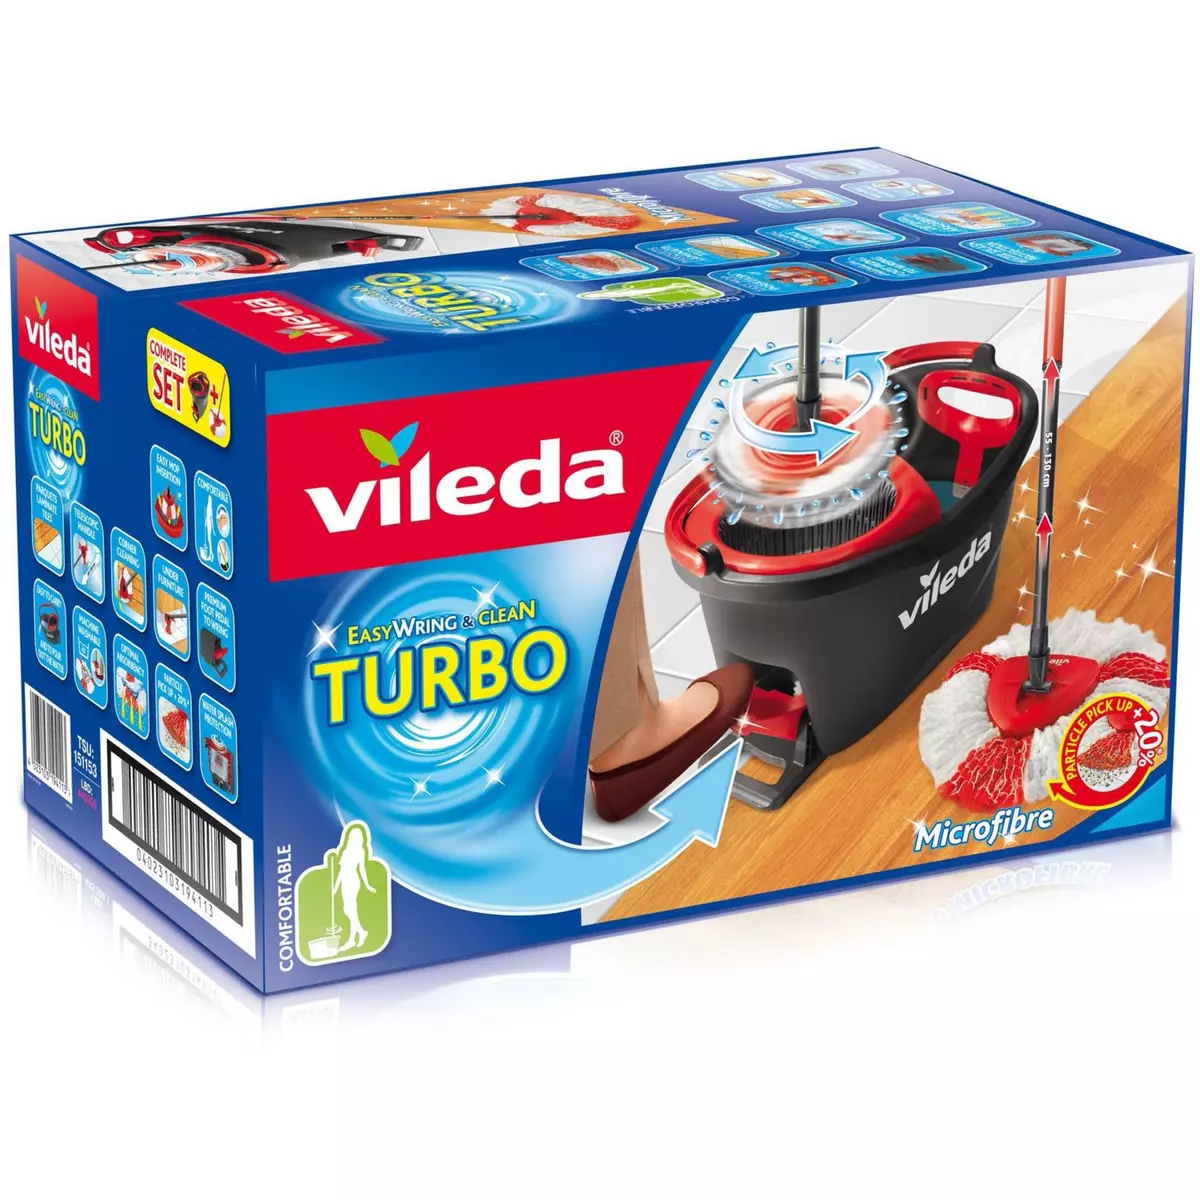 Vileda Easy Wring & Clean Turbo balai avec seau à pédale - Pack